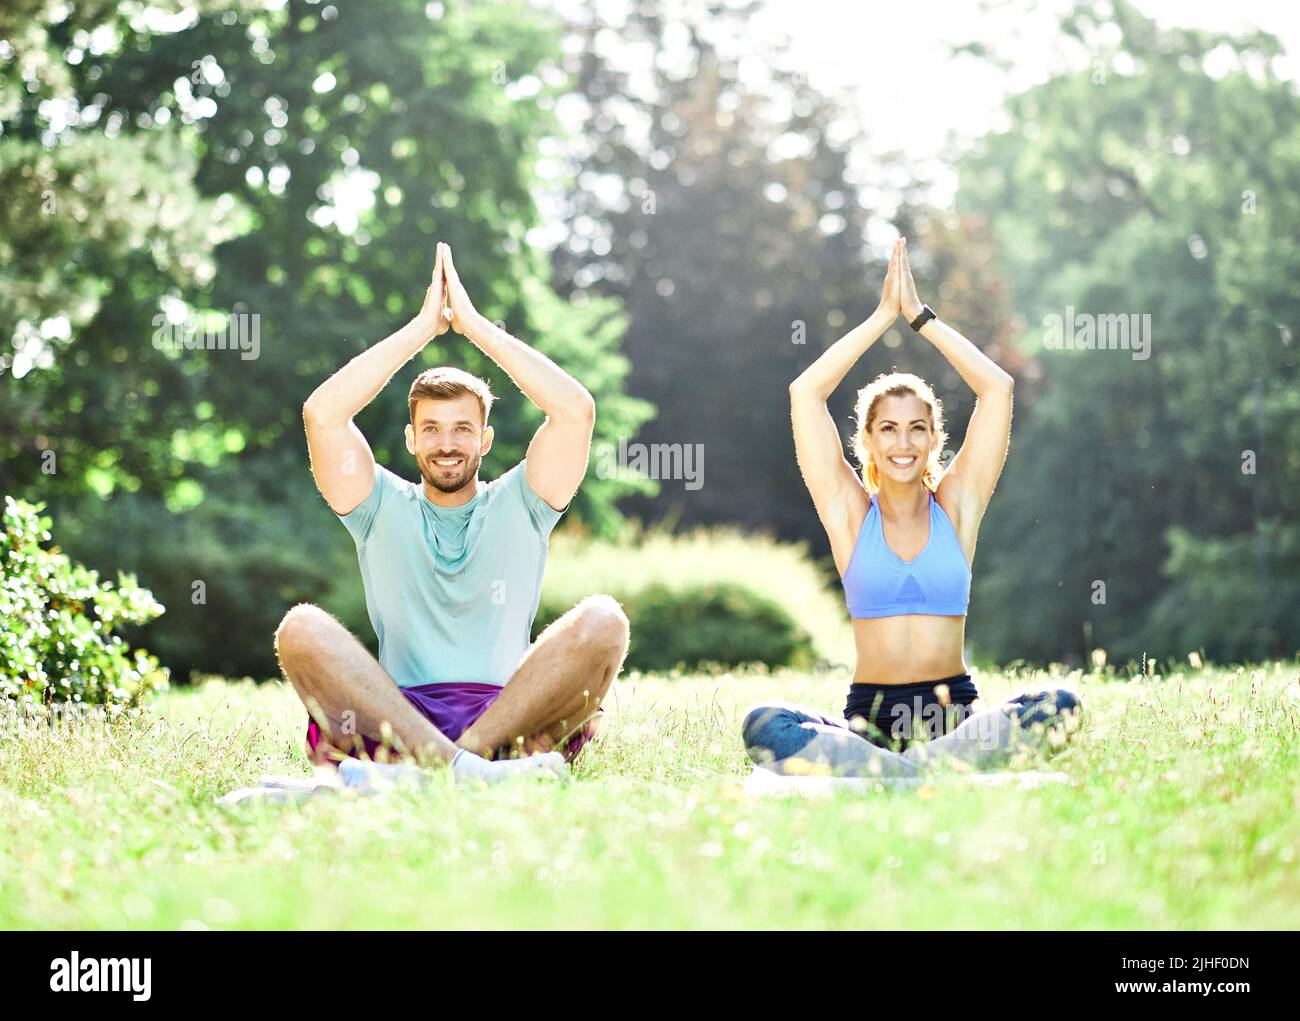 mujer hombre pareja yoga parque al aire libre estilo de vida naturaleza sano fitness deporte salud ejercicio relajación Foto de stock